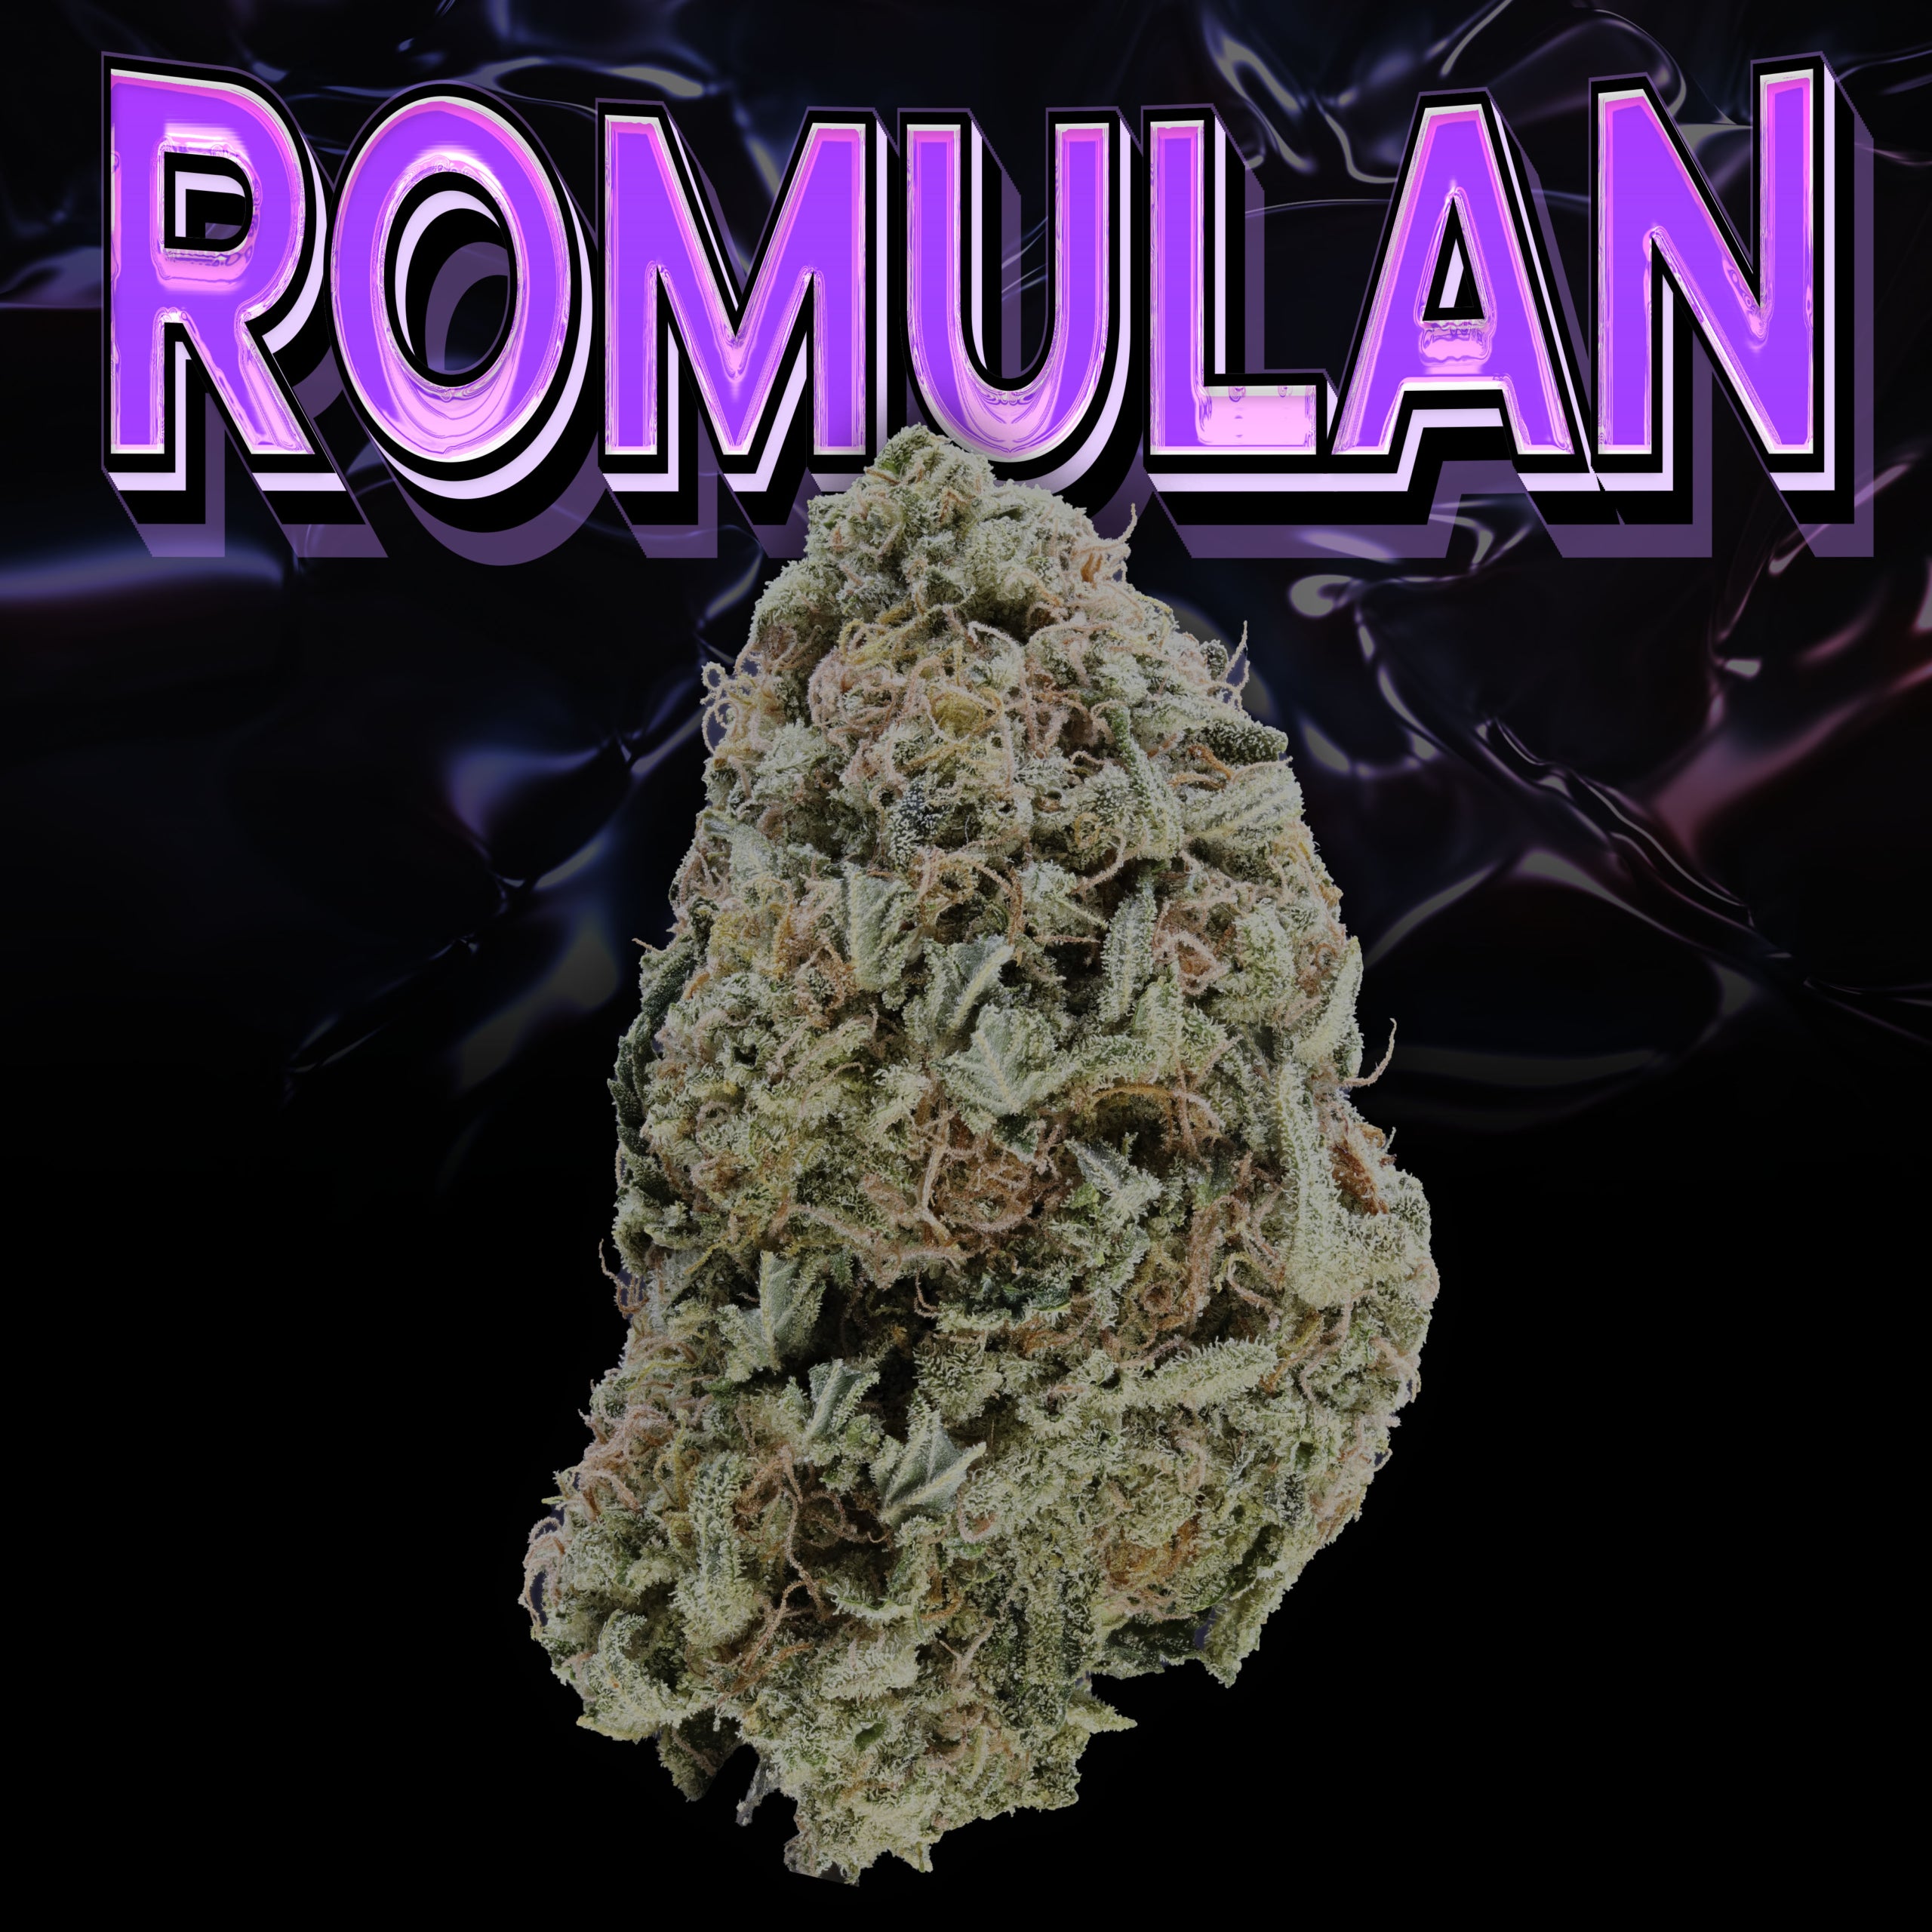 Romulan Bud